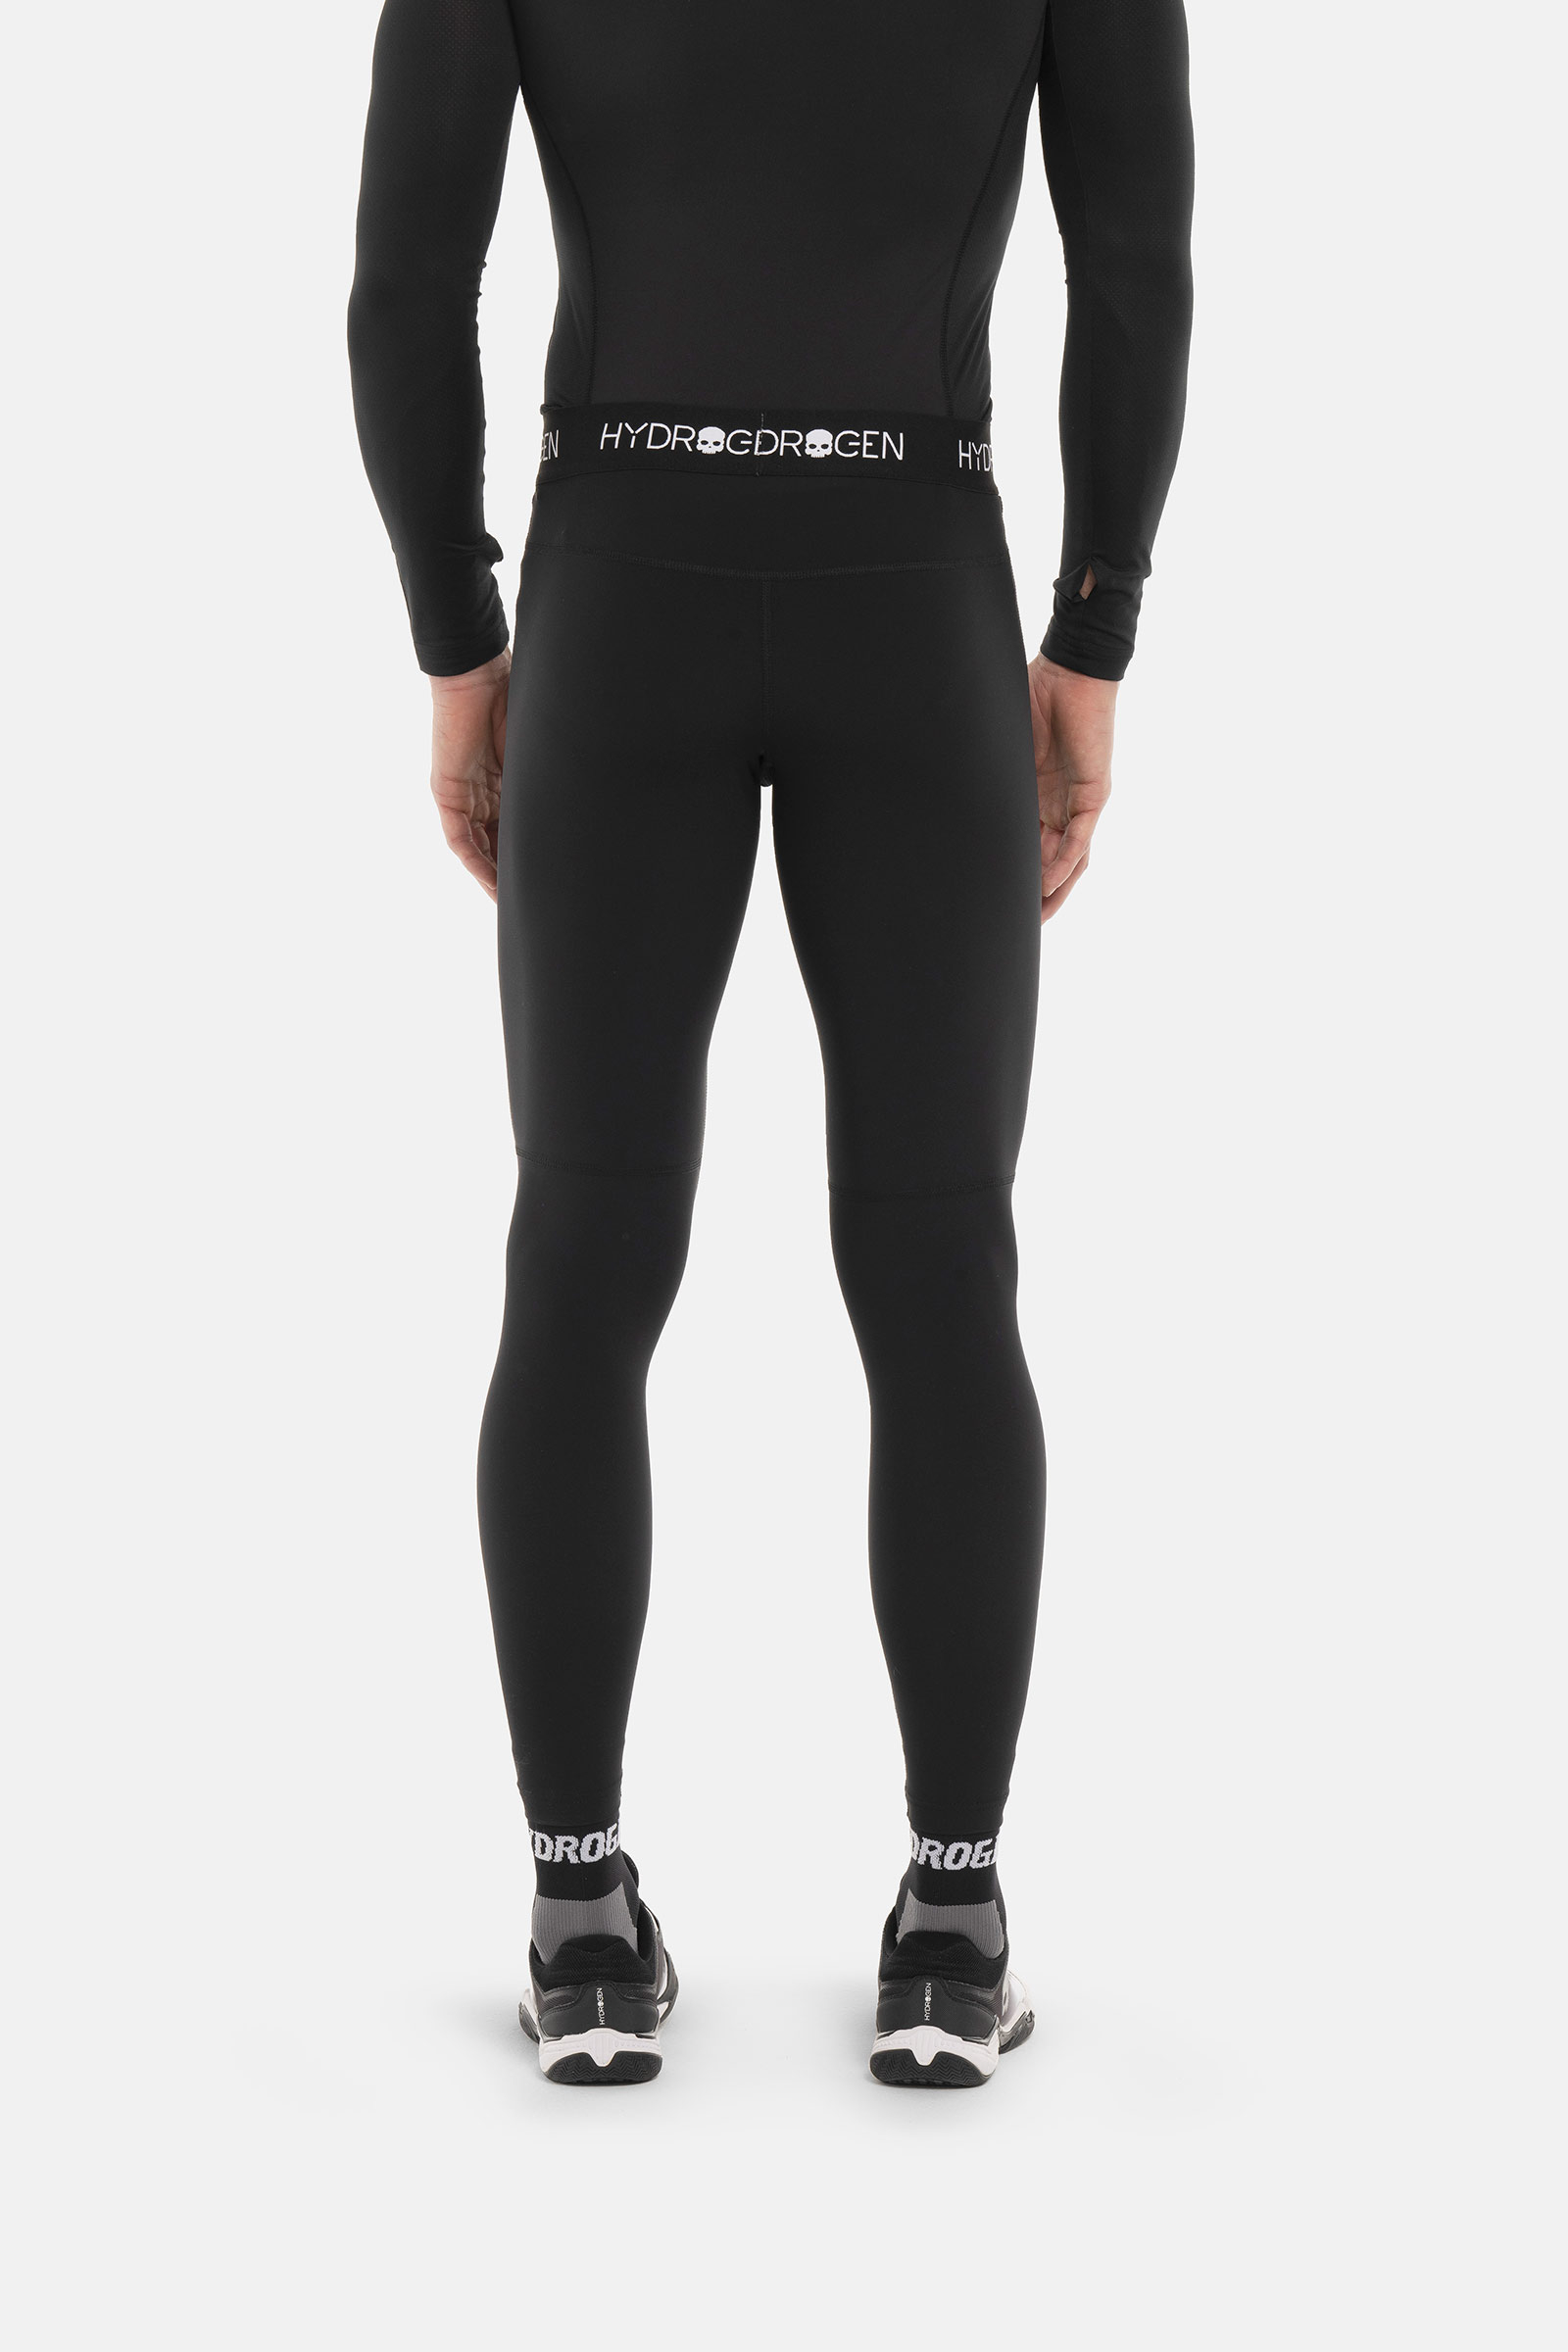 LEGGINGS ESSENTIAL - BLACK - Abbigliamento sportivo | Hydrogen